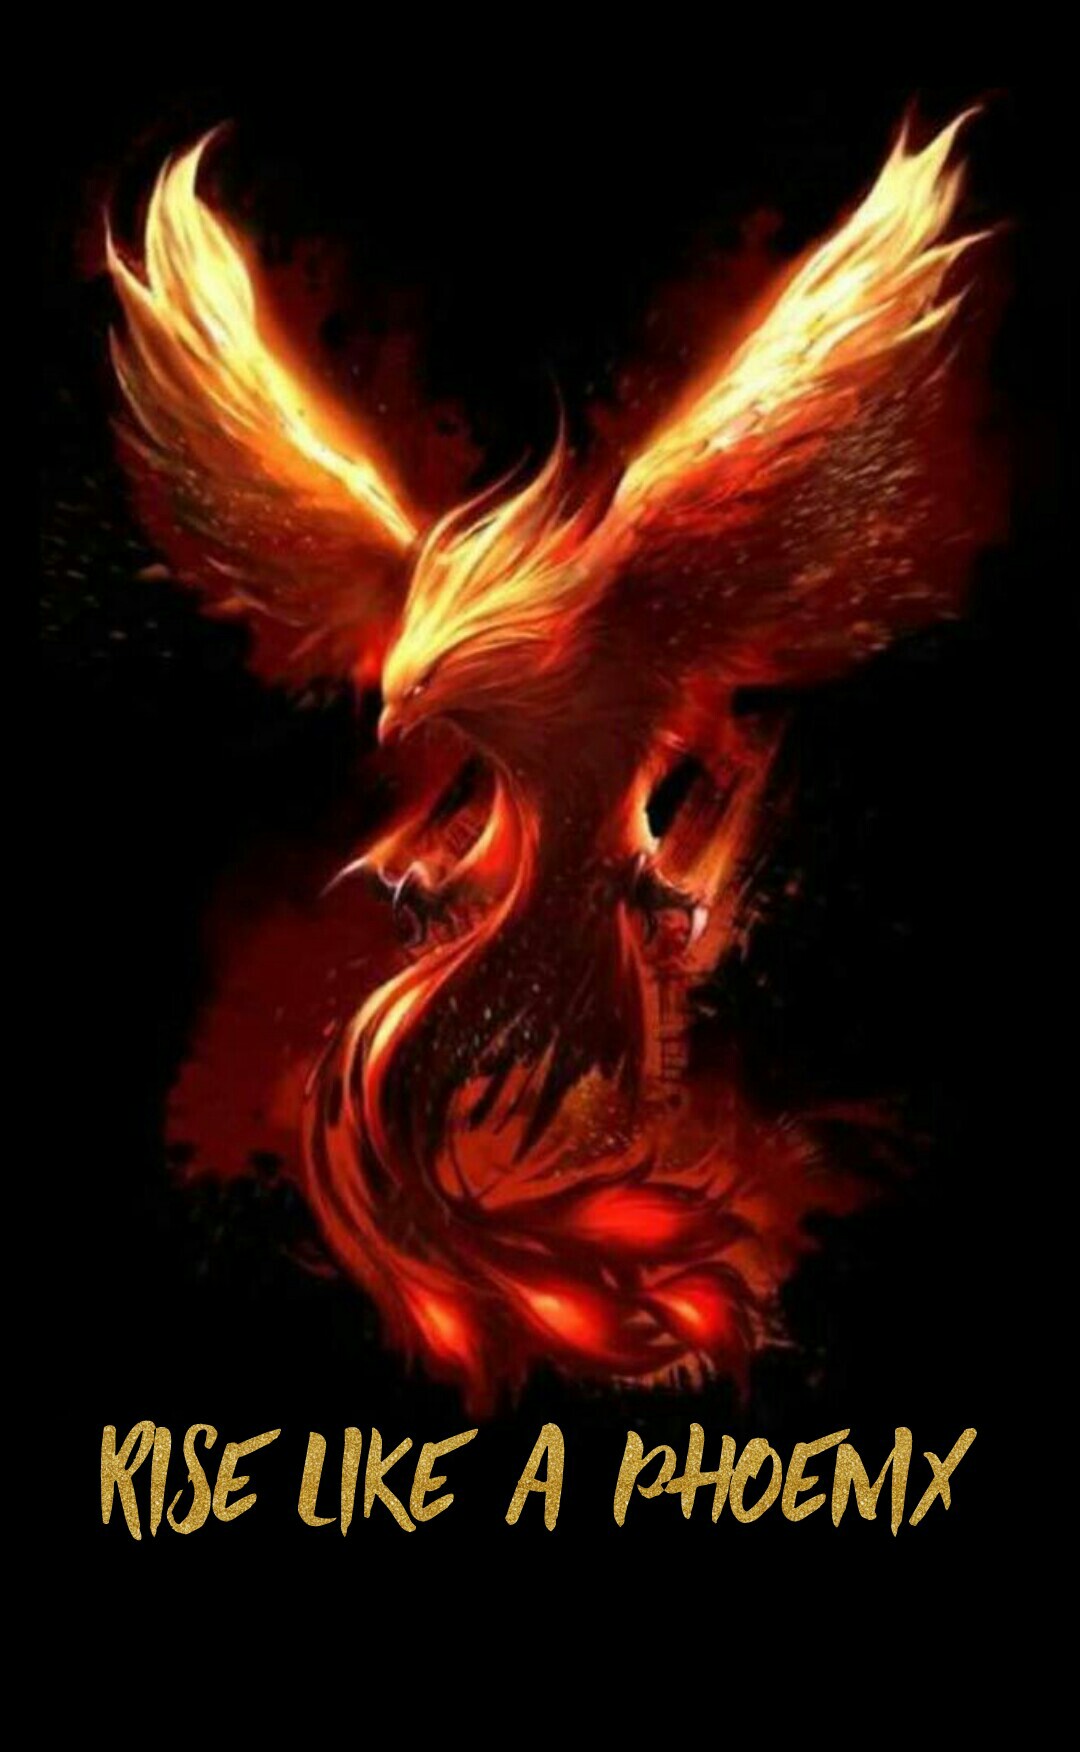 Rise like a phoenix